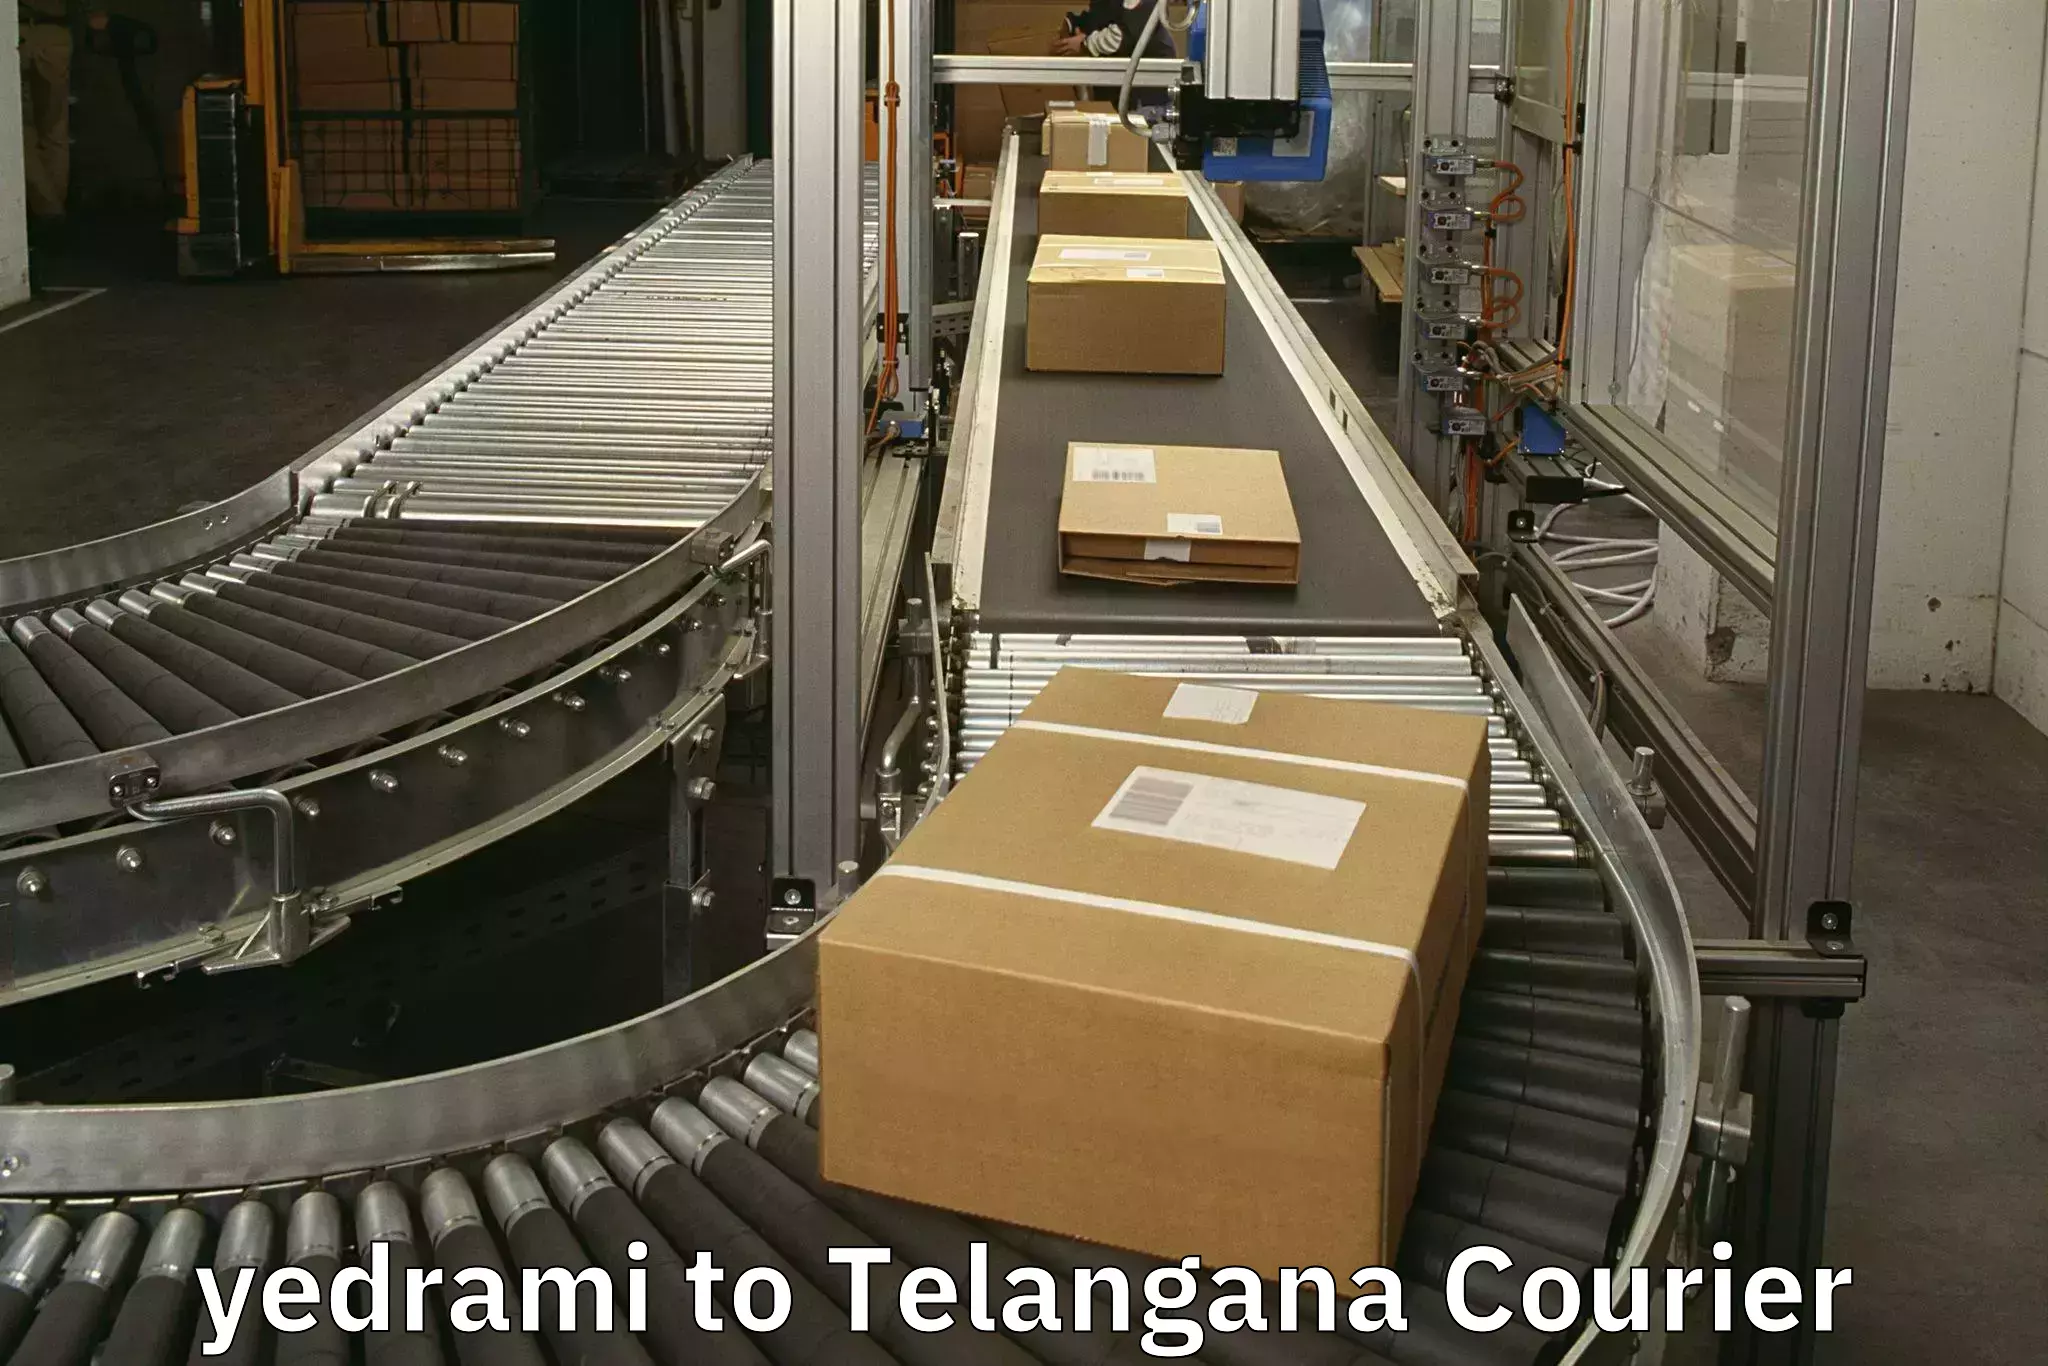 Electronic items luggage shipping yedrami to Telangana